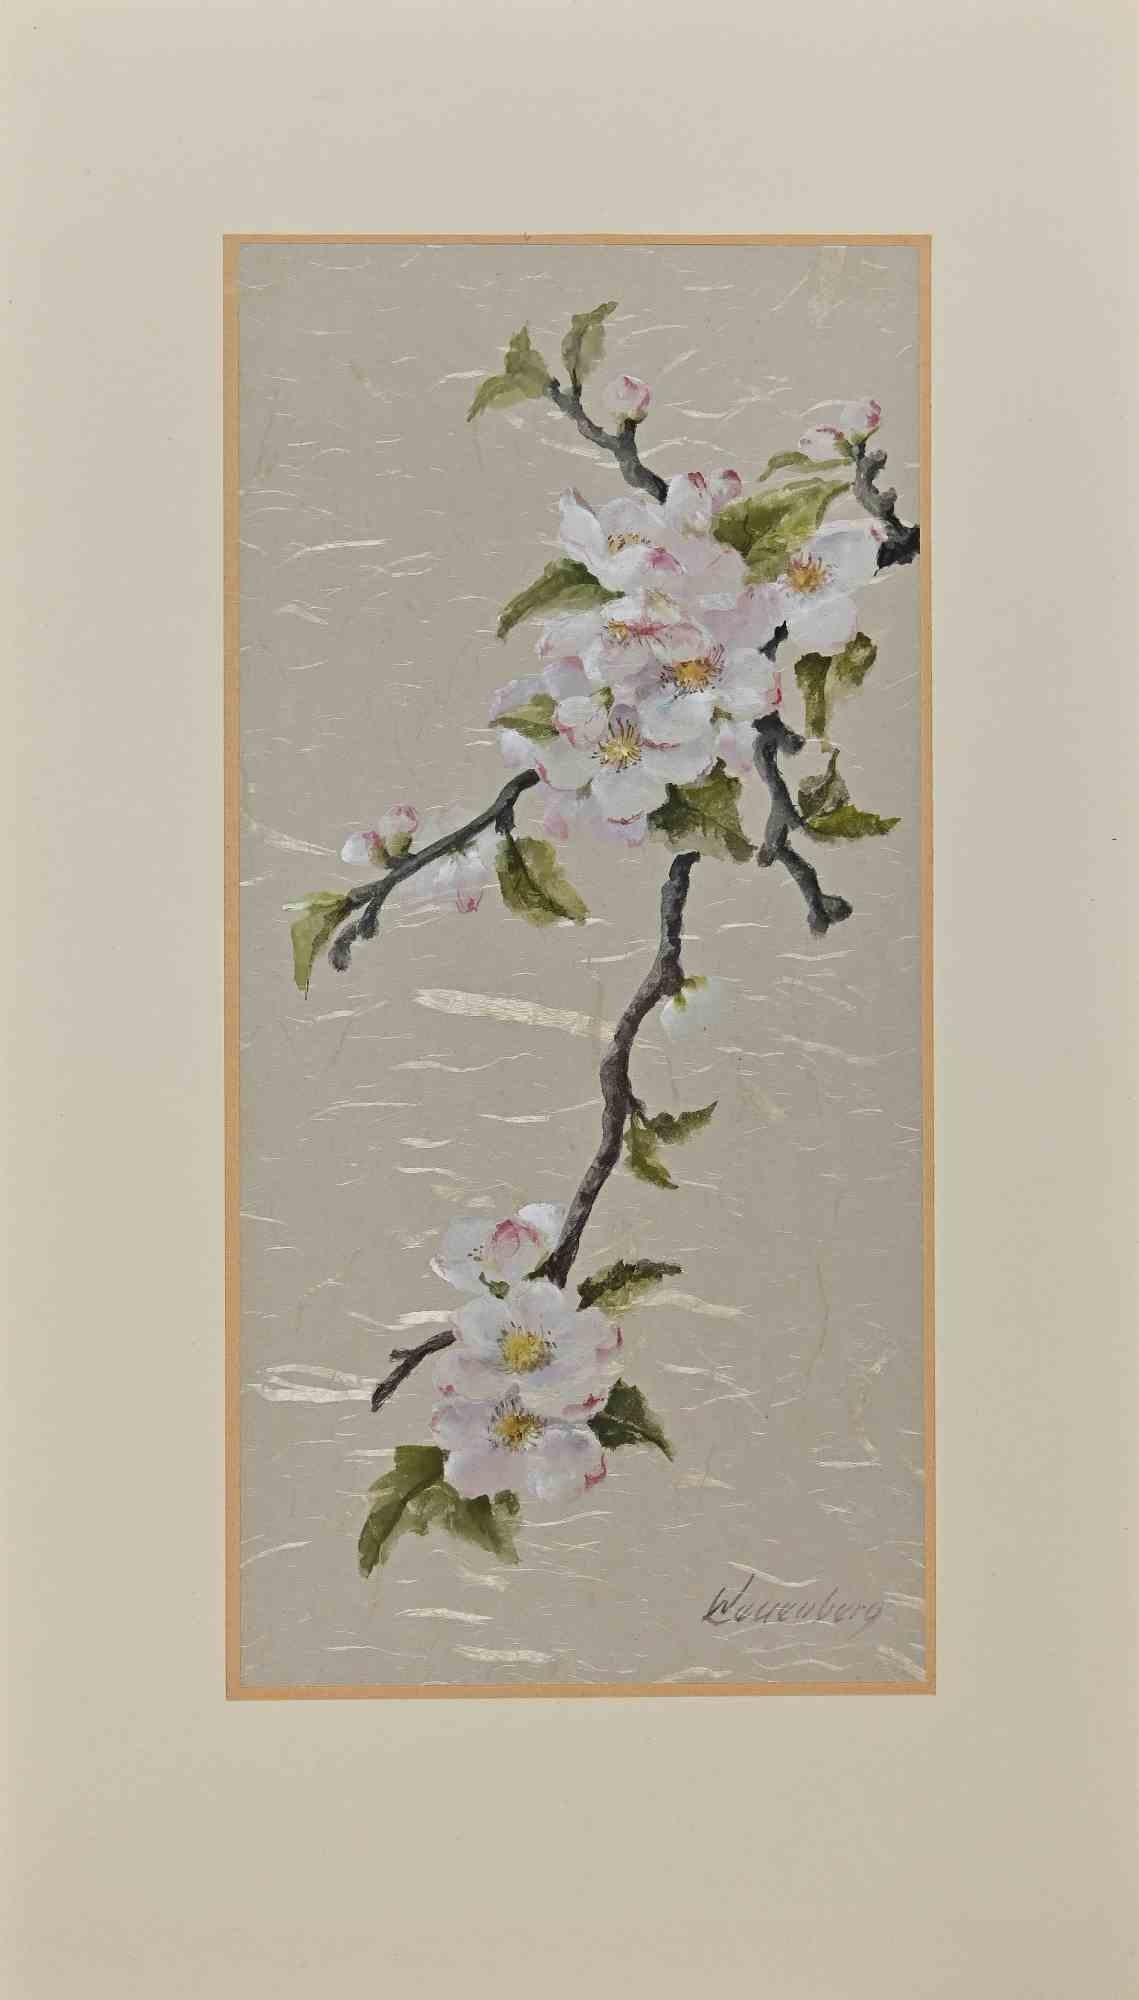 Fleurs est une gouache sur papier attribuée à Nita Wallenberg (1896-1966).

L'œuvre est en très bon état et comprend un passe-partout en carton de couleur crème (42x24 cm).

Signé à la main par l'artiste dans le coin inférieur droit.

Ebba Maria